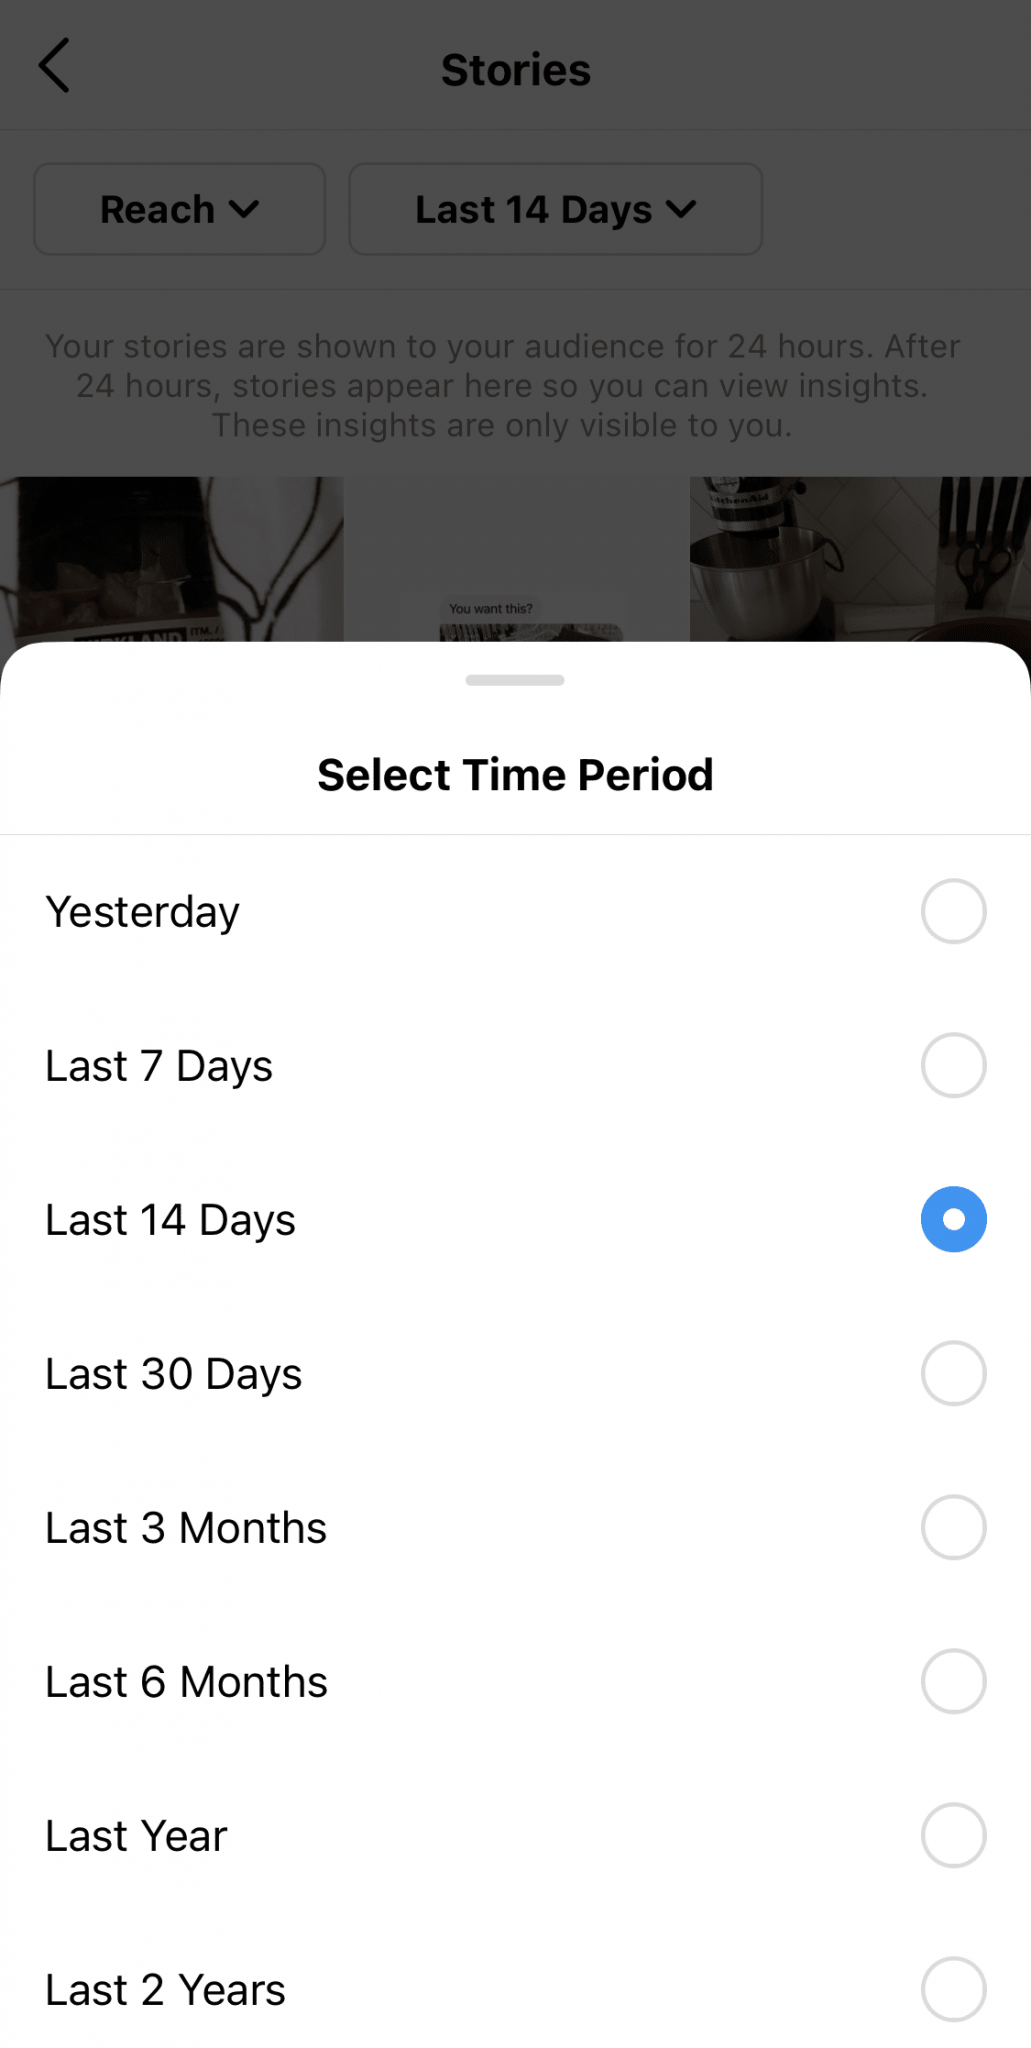 Bạn có thể điều chỉnh Instagram Story theo thời gian thực từ thời điểm hôm qua đến 2 năm trước.